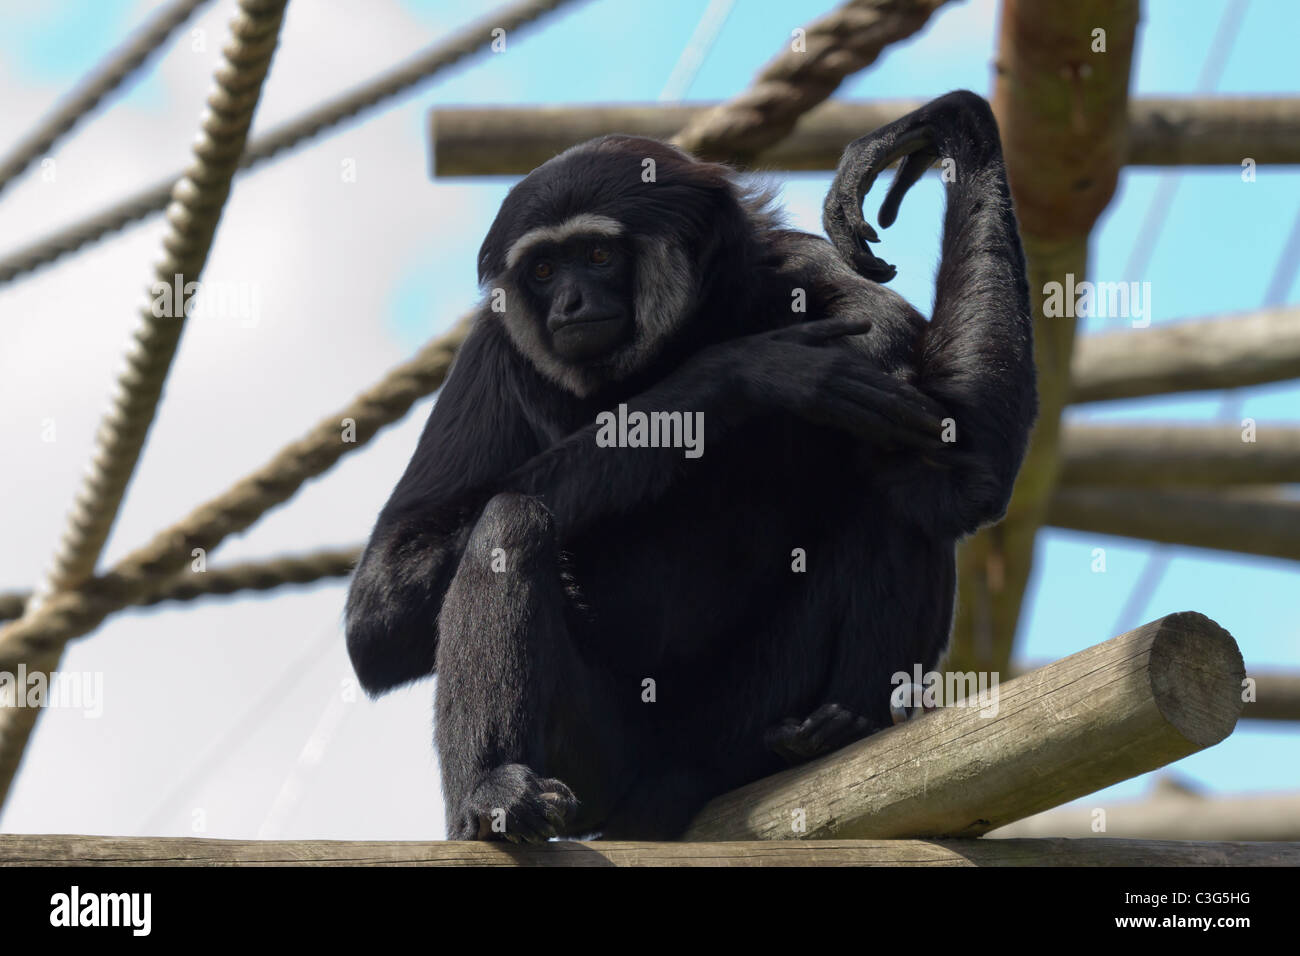 Eine agile Gibbon sitzt auf einem Klettergerüst. Aufgenommen im Zoo von Bristol. Stockfoto